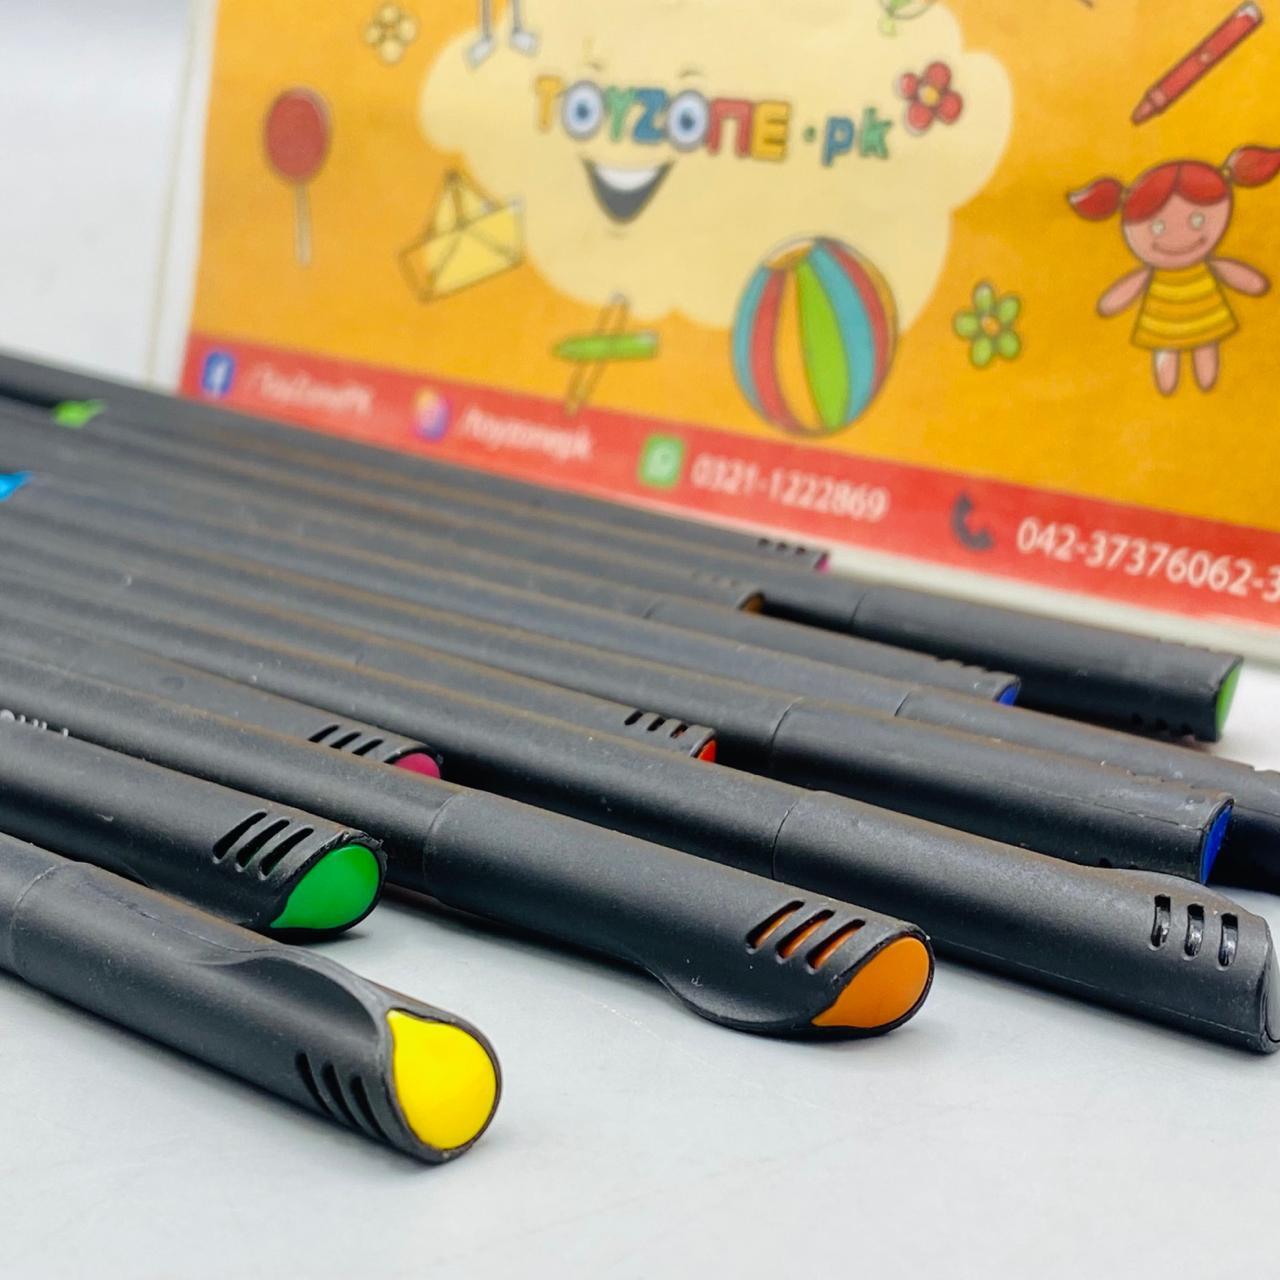 Fineliner Color Pen Set (24 Pieces)